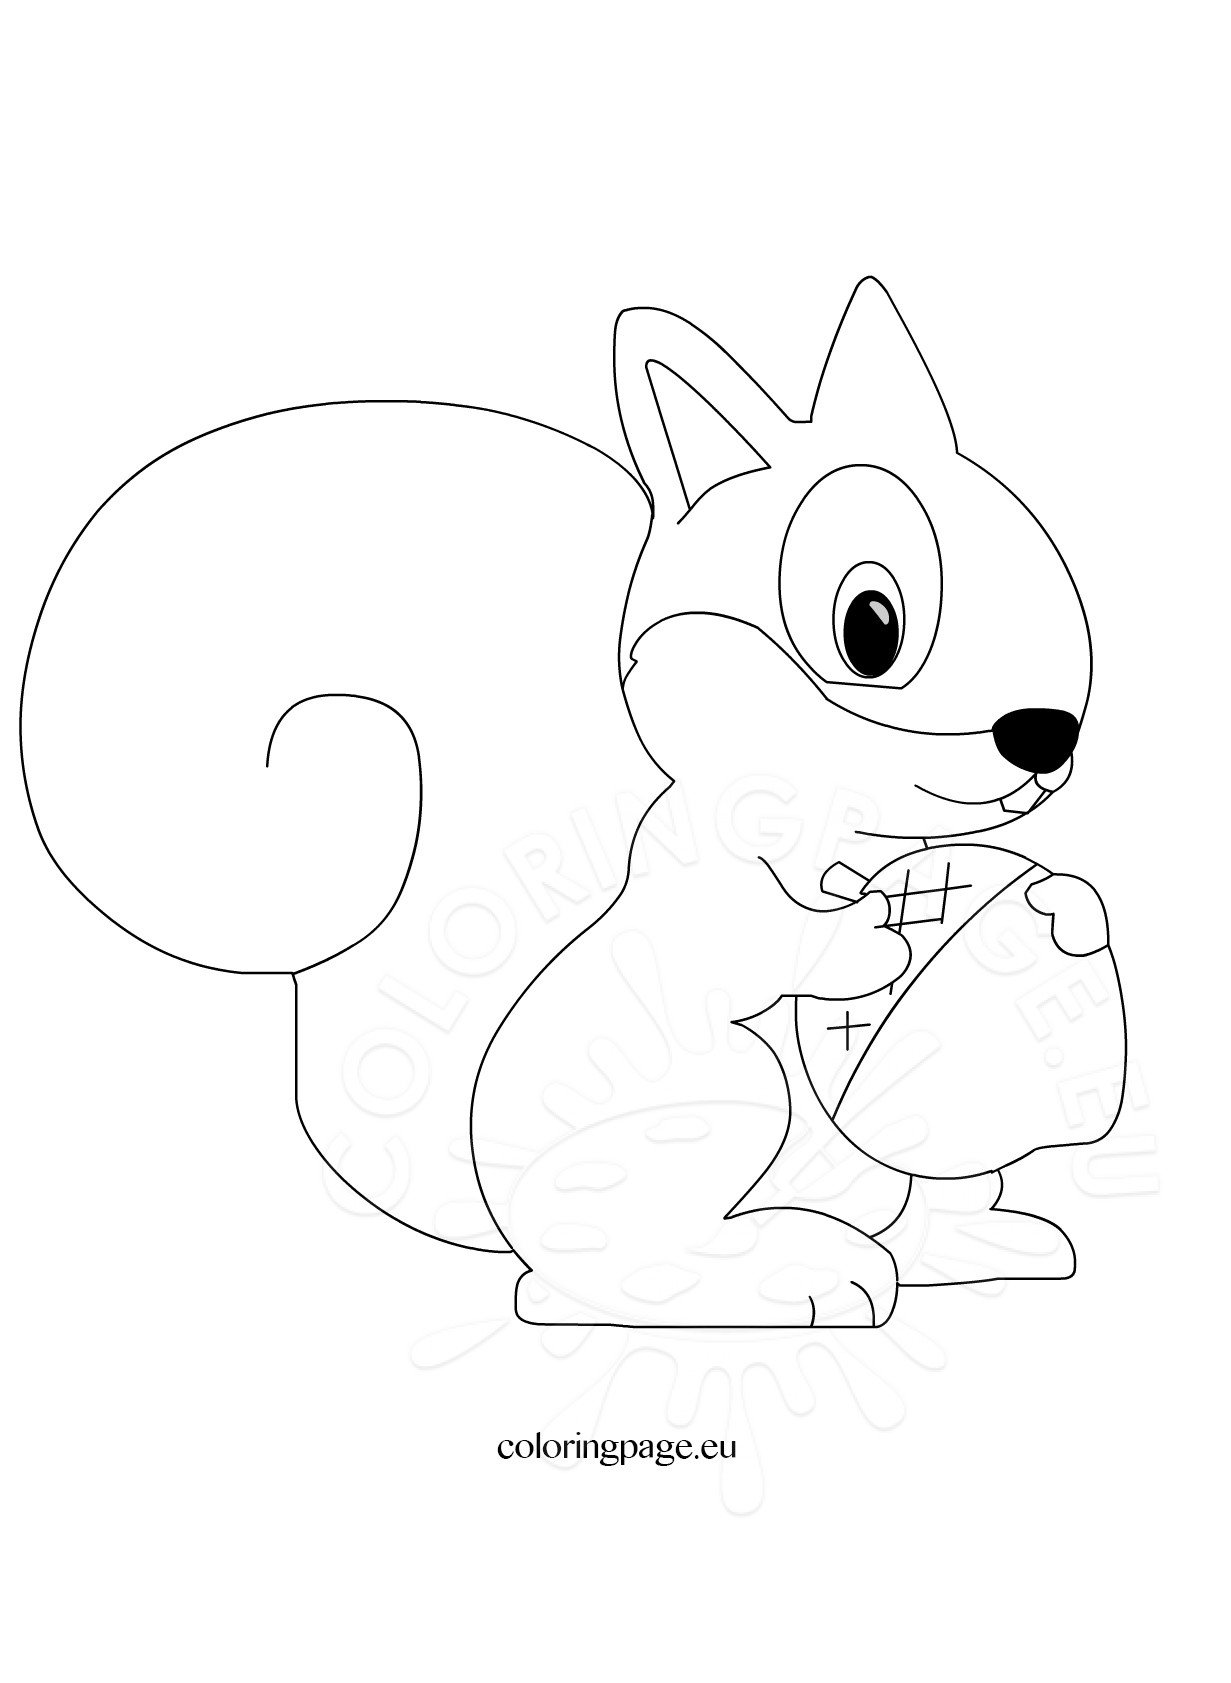 Cute Squirrel cartoon Coloring Page